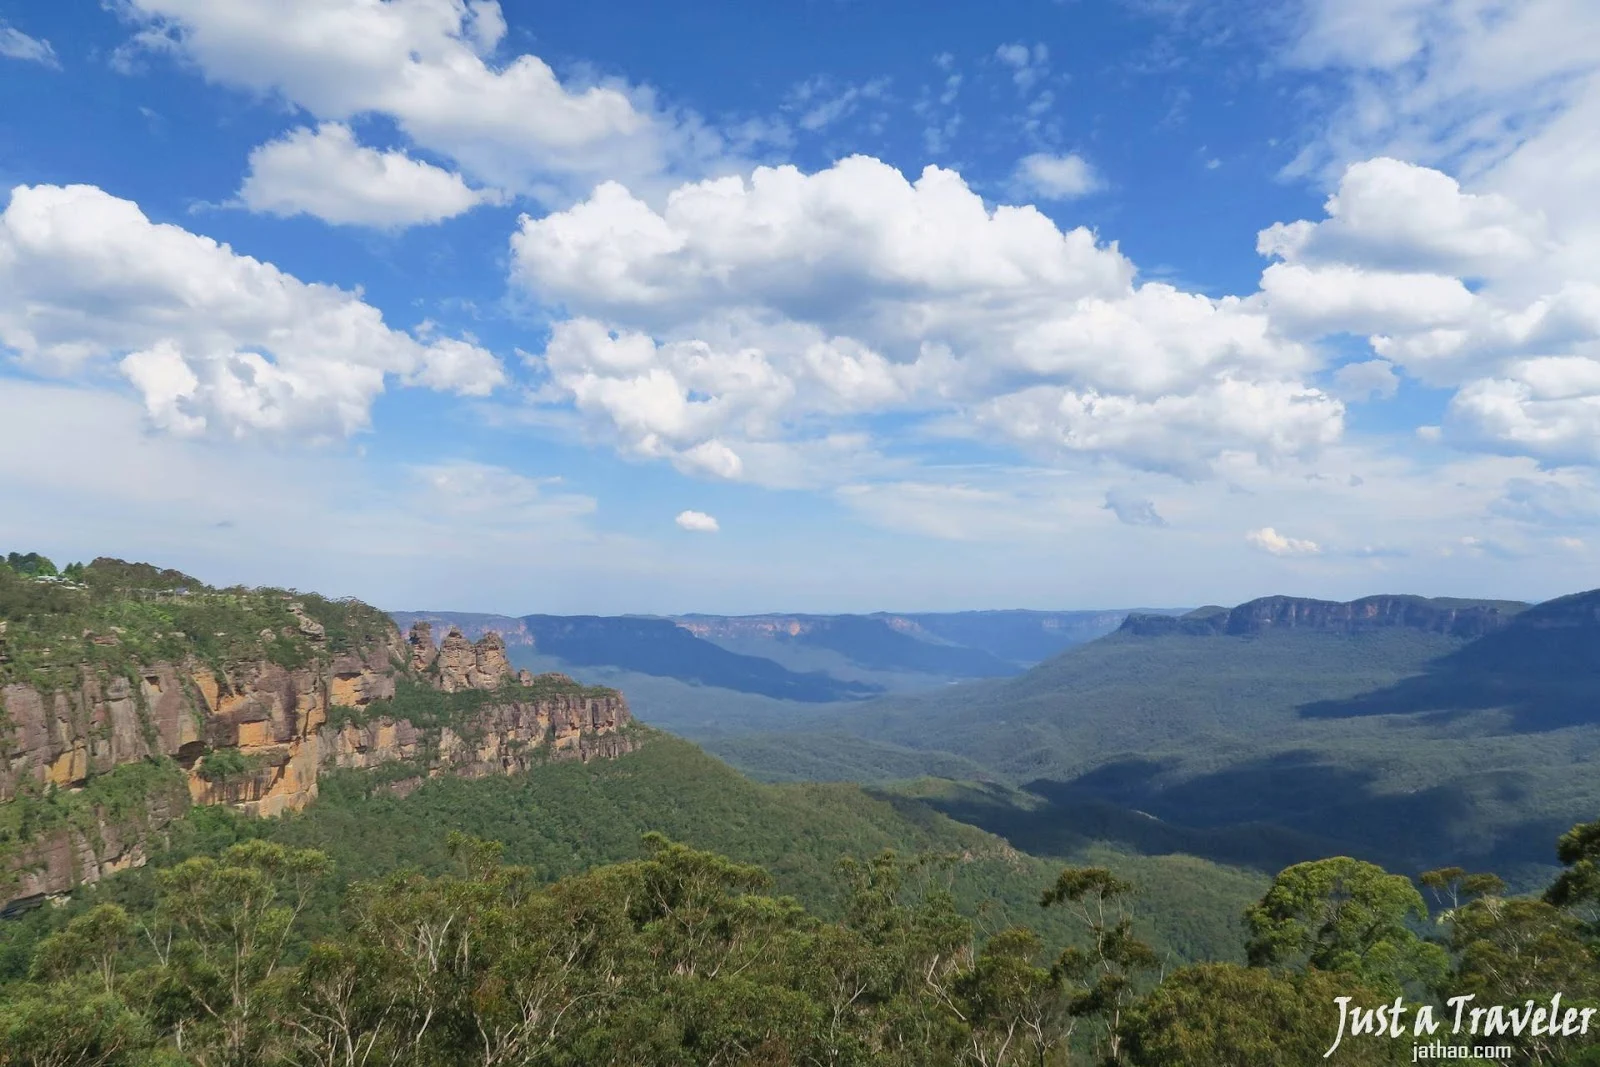 雪梨-藍山景點-藍山-藍山行程-藍山交通-藍山旅遊-藍山自由行-澳洲藍山-Sydney-Blue-Mountains-Tourist-Attraction-Travel-Australia